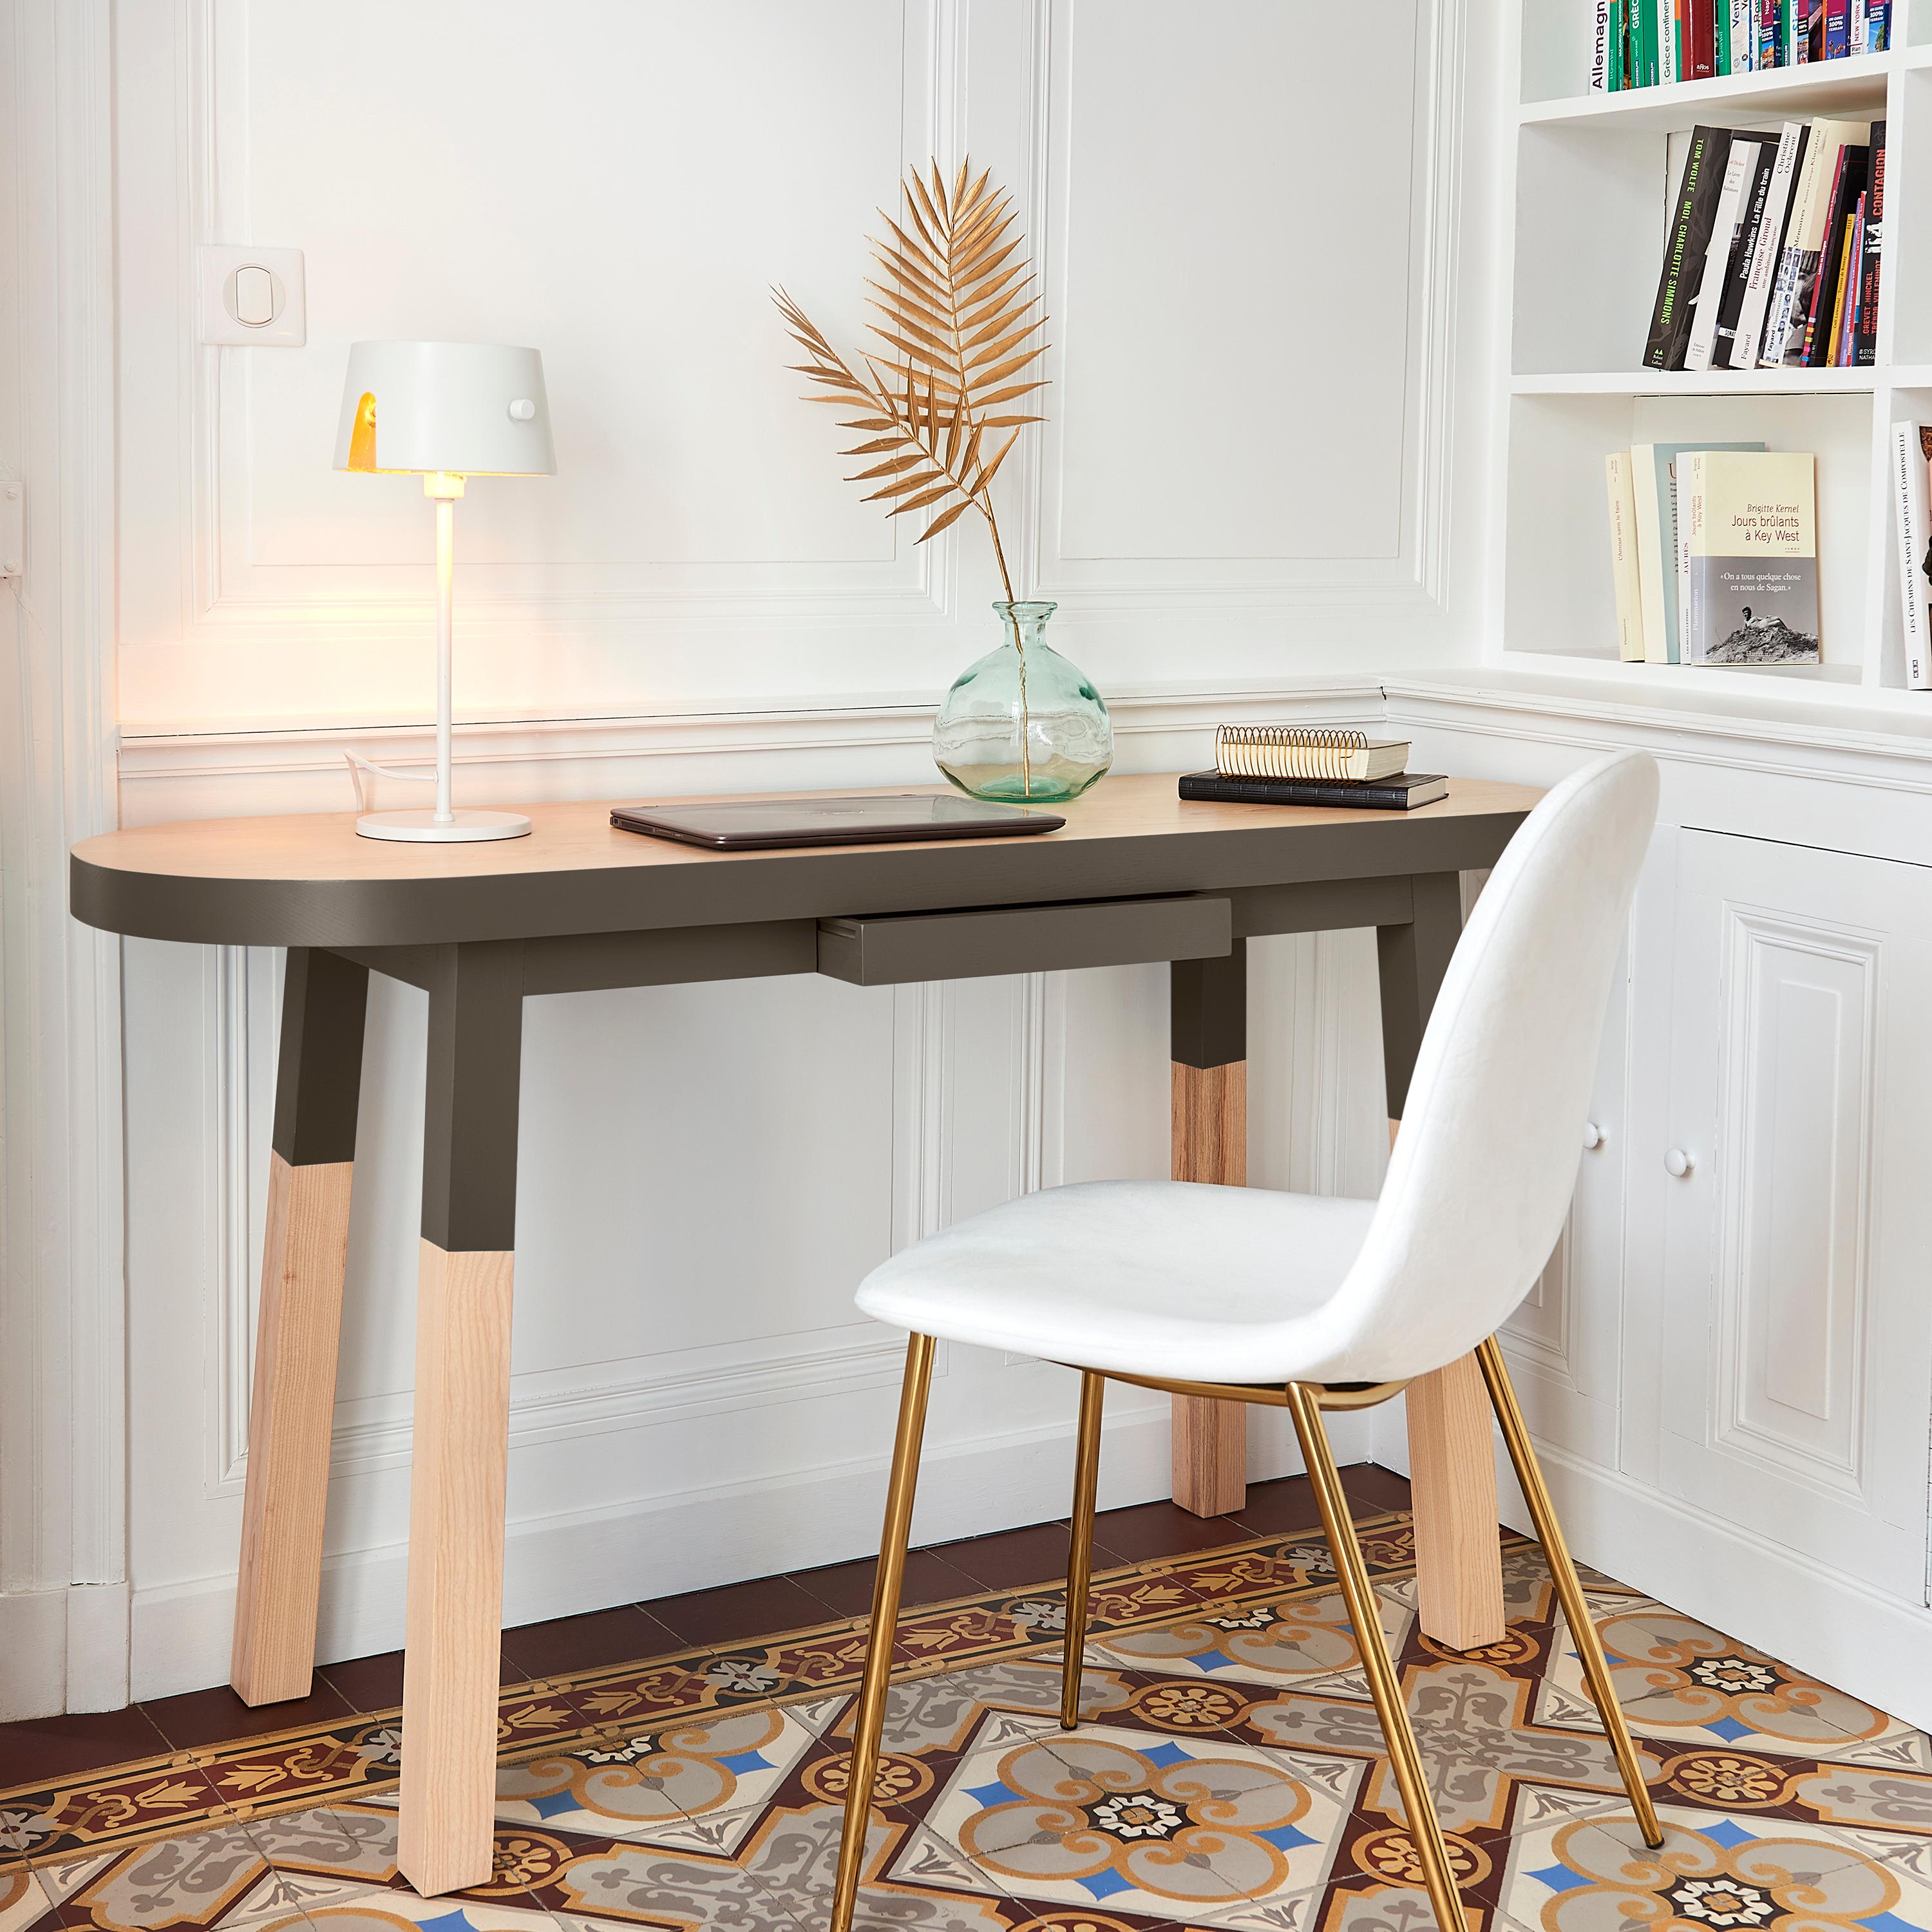 Cette table console est fabriquée en frêne massif et conçue par le célèbre designer parisien Eric Gizard. 

Nos bois proviennent exclusivement de forêts françaises gérées durablement.

1 tiroir en bois à l'avant

Ce meuble fait partie de la